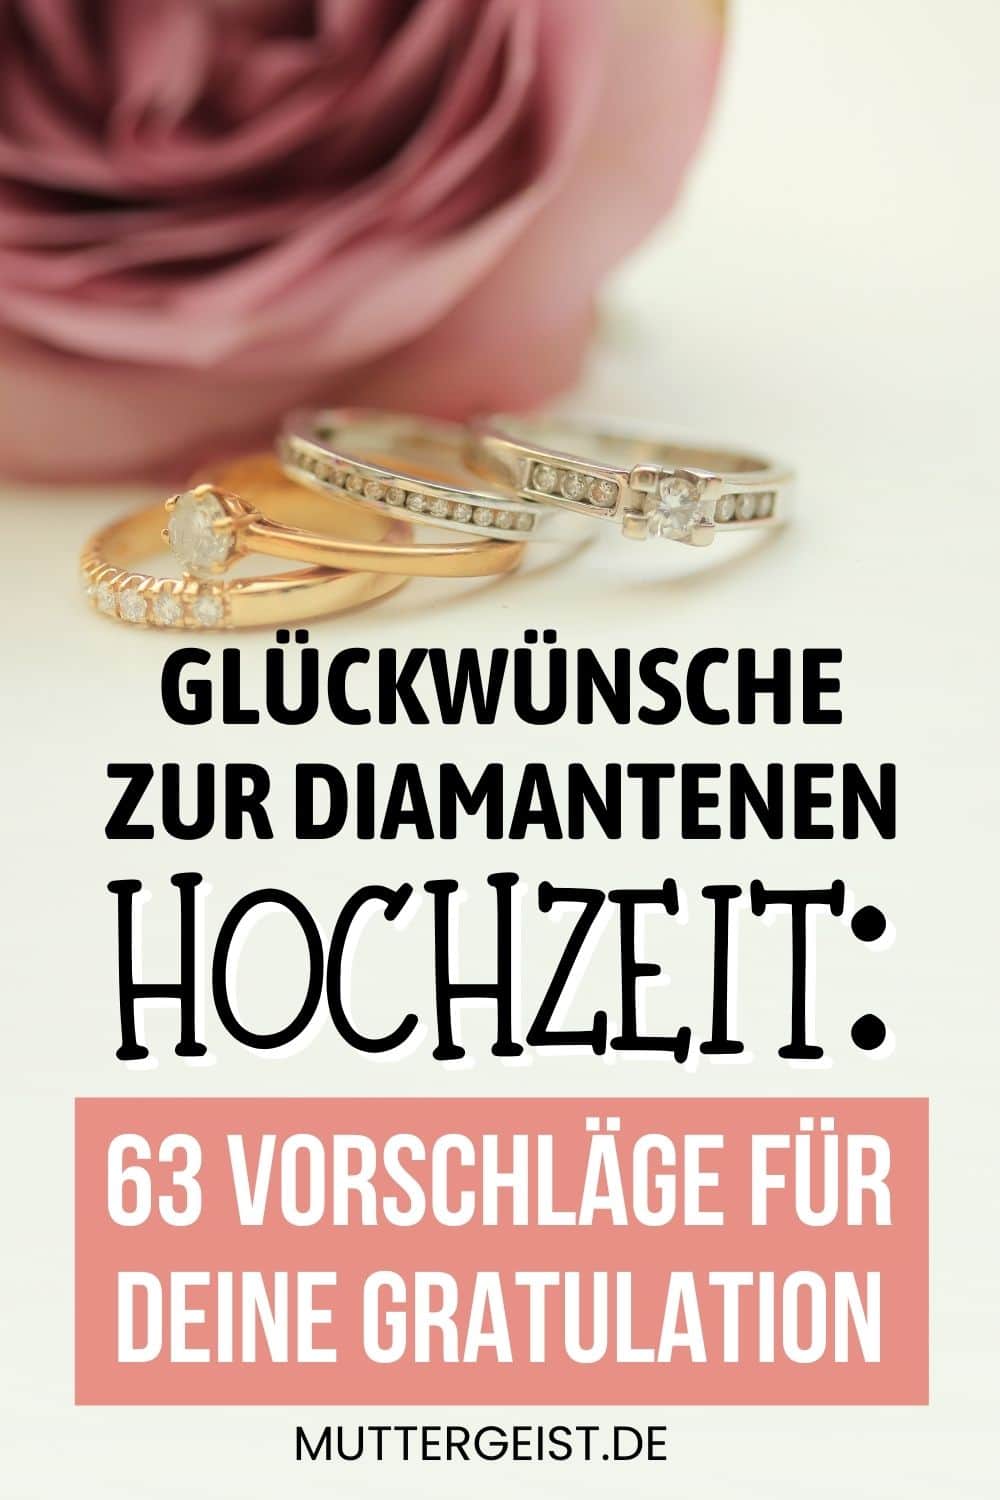 Glückwünsche zur diamantenen Hochzeit – 63 Vorschläge für deine Gratulation Pinterest